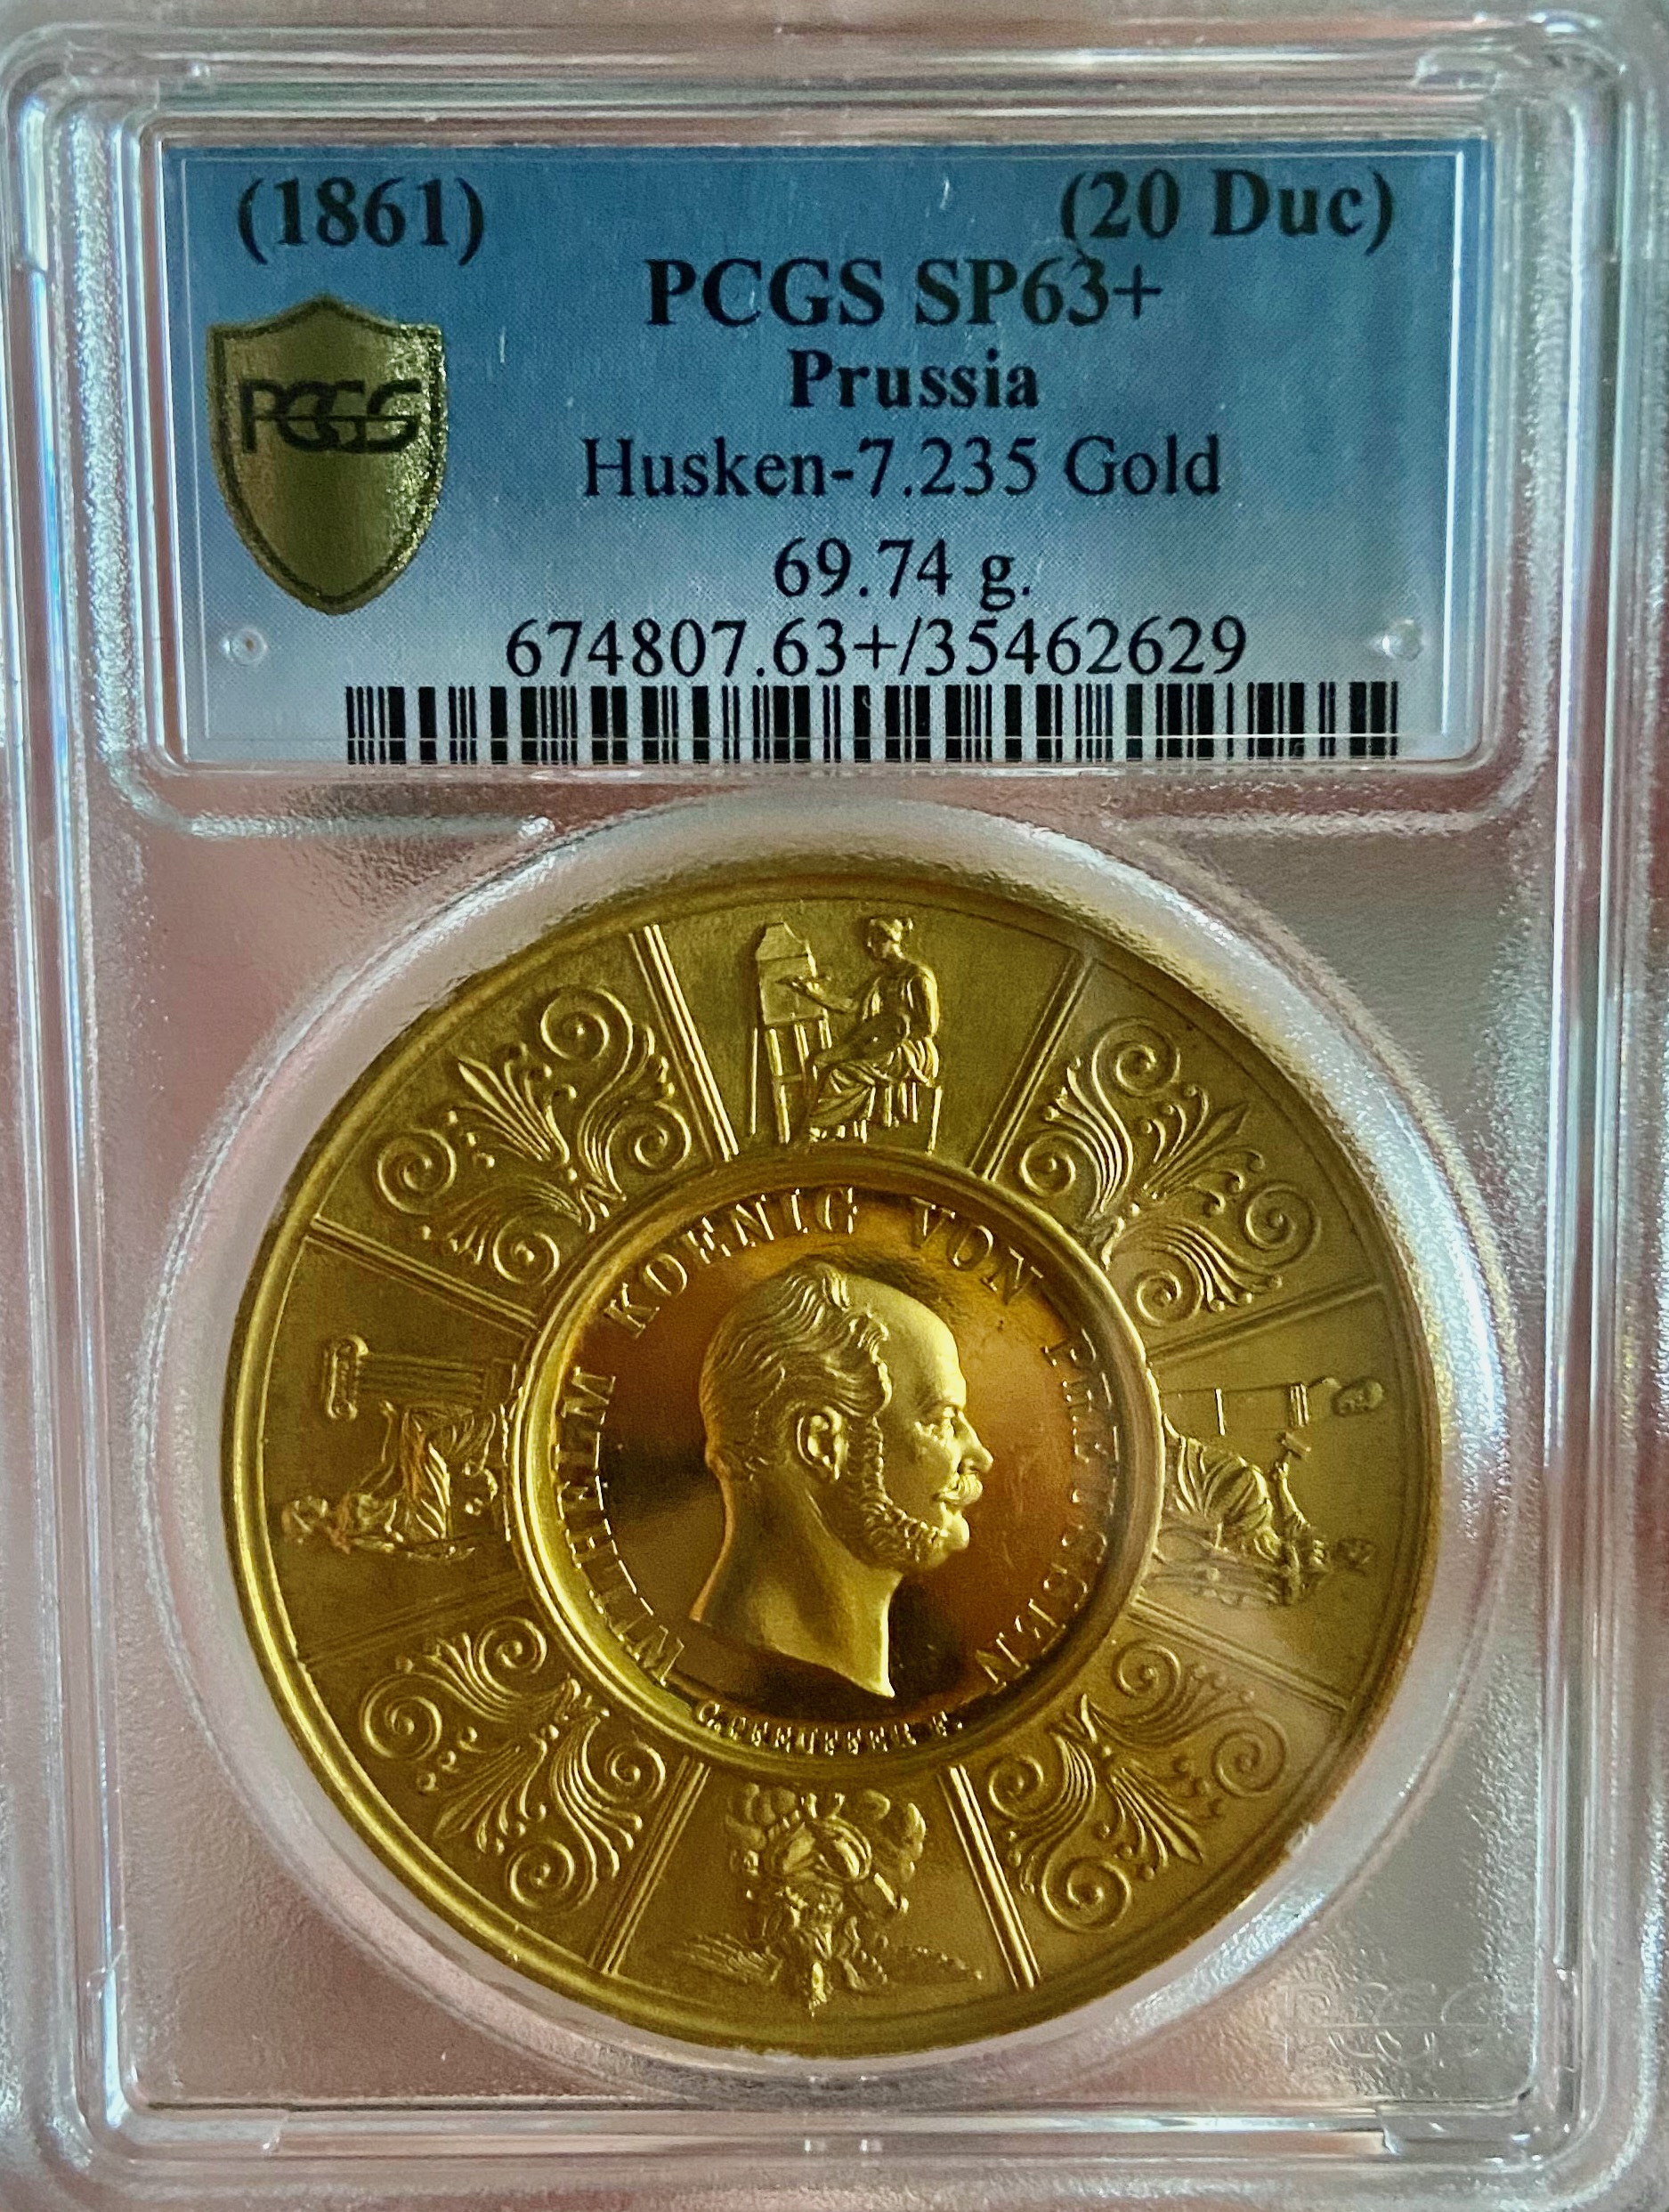 ドイツプロイセン1861年20ダカットゴールドメダルPCGS SP63+ 